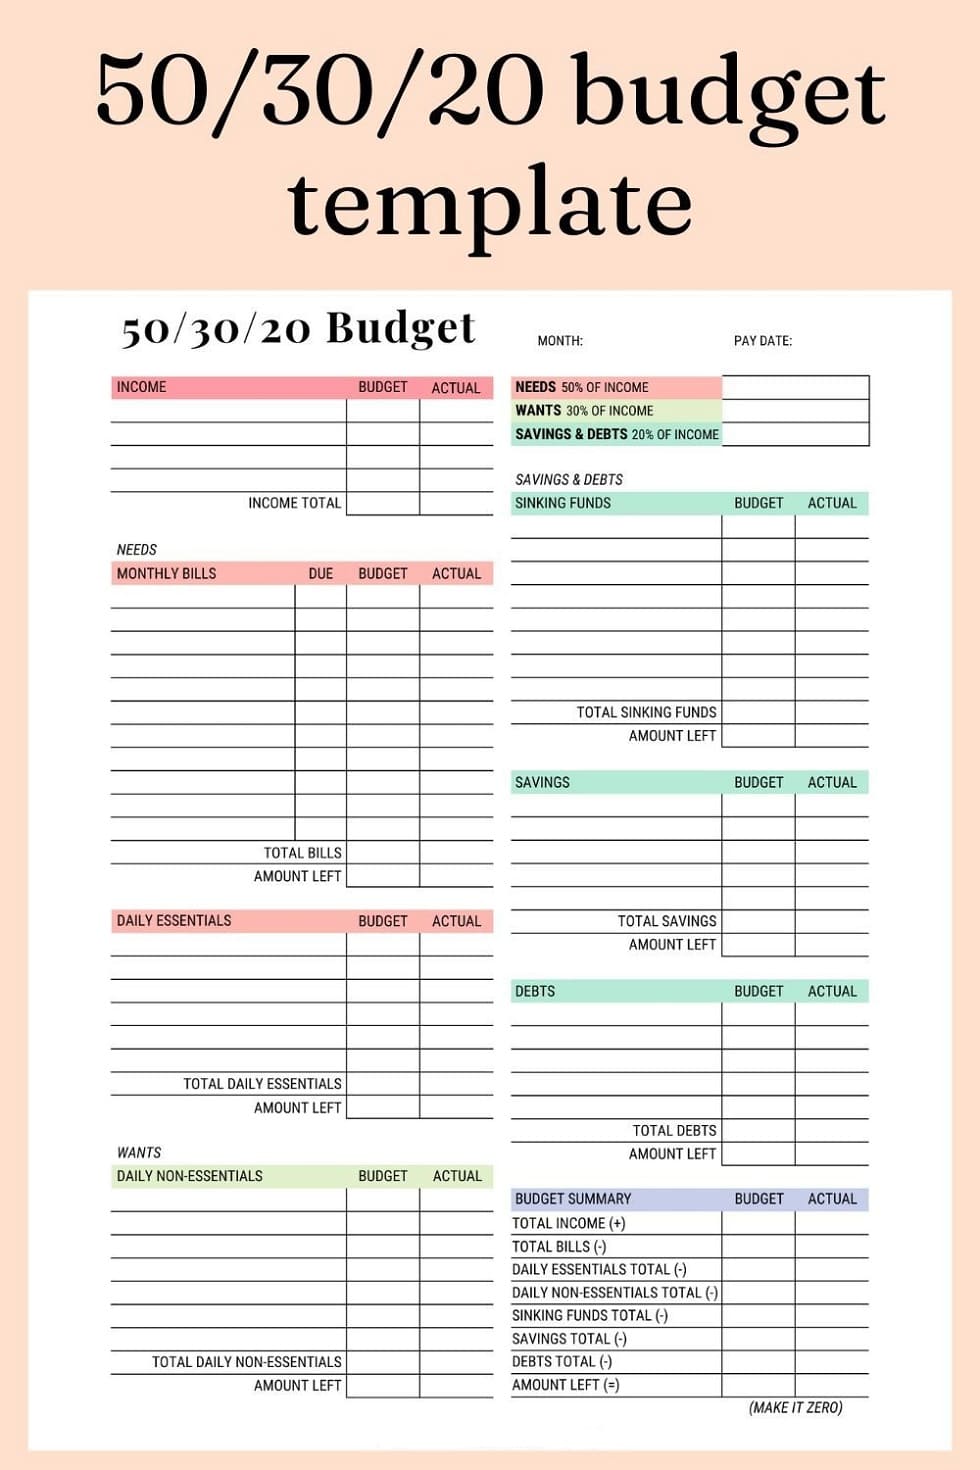 Printable 50-30-20 Budget Template Photo